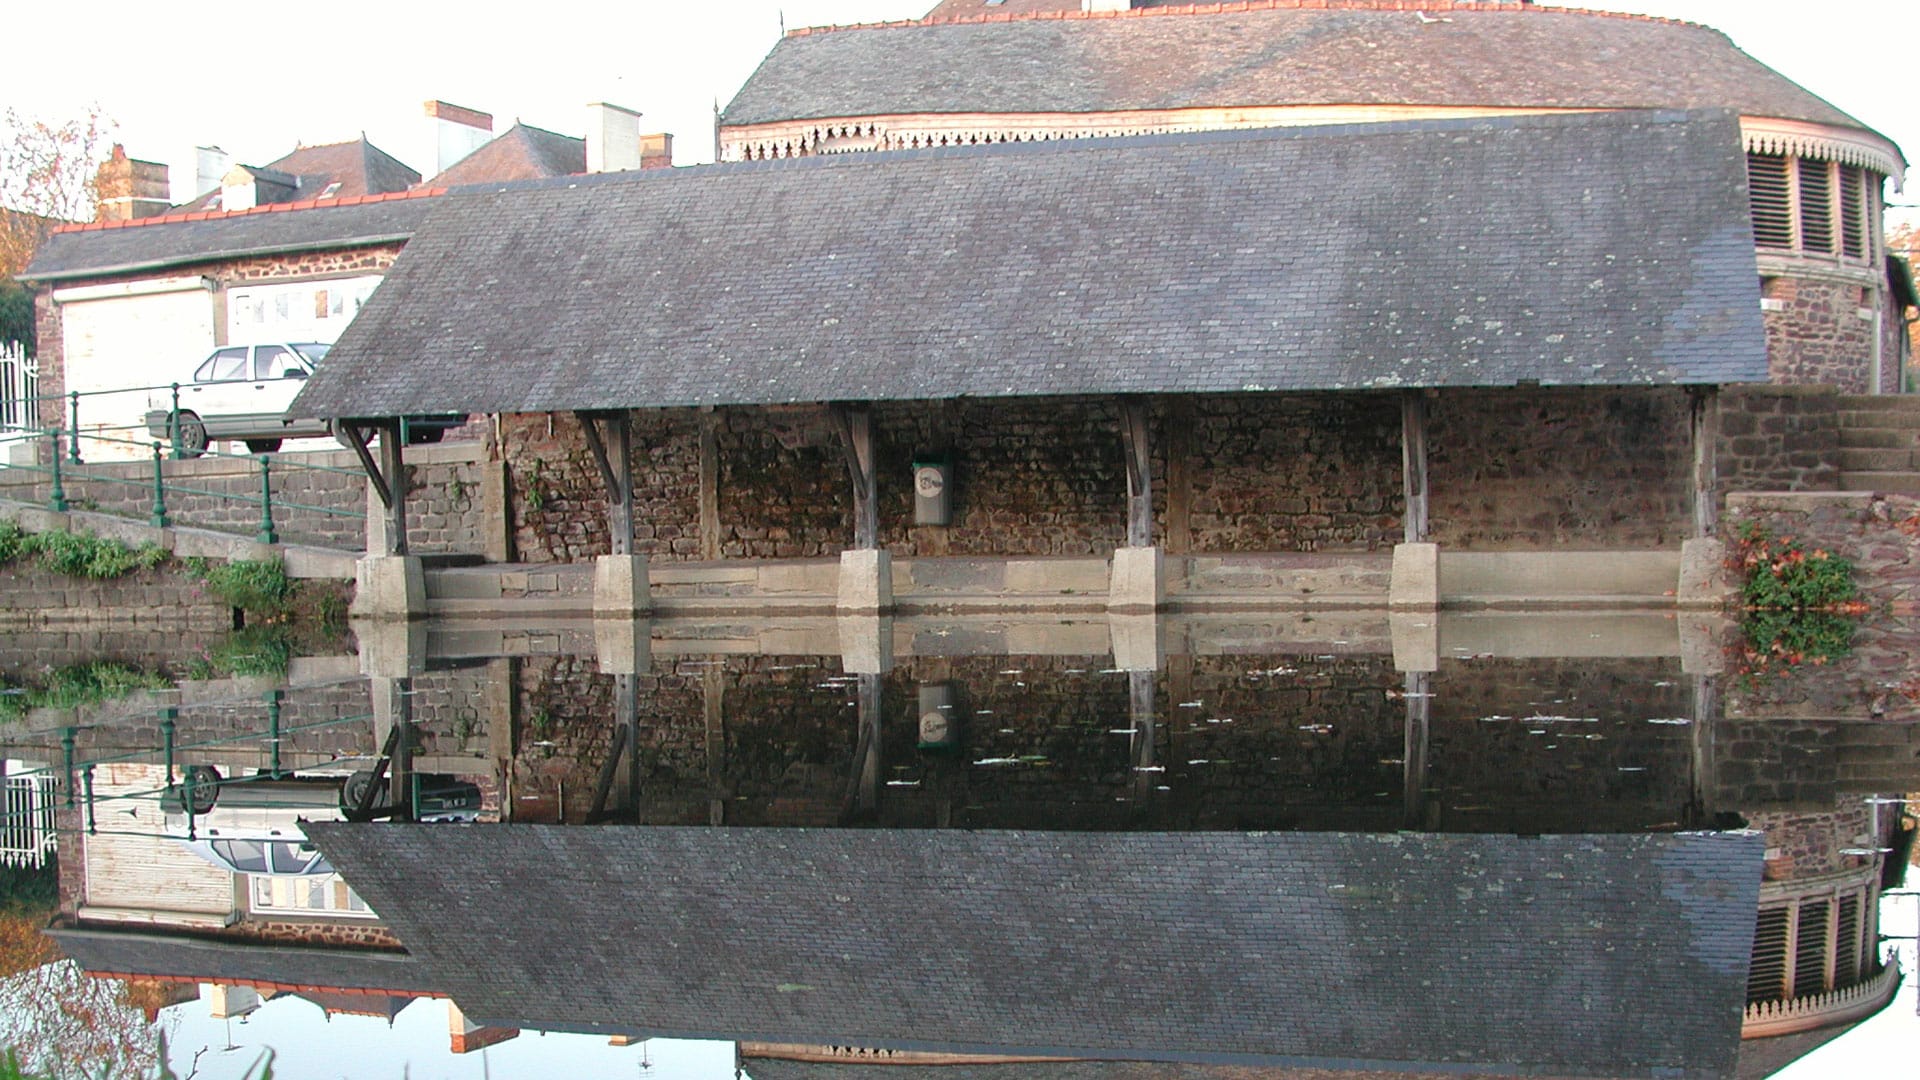 avoir, séchoir et anciens bains publics (à l’arrière-plan) de Montfort-sur-Meu (35)